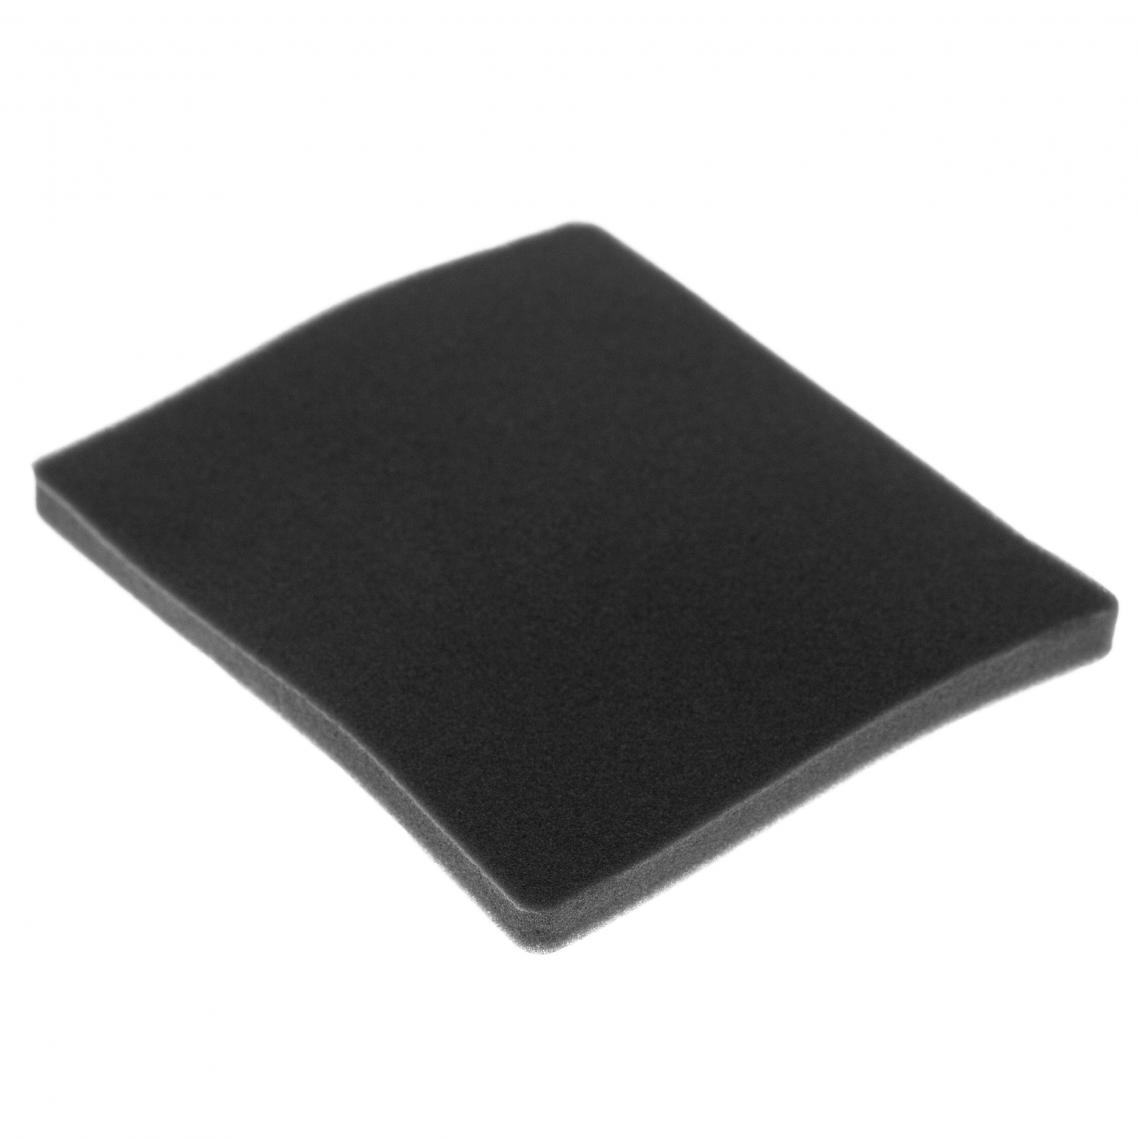 Vhbw - vhbw Filtre compatible avec Electrolux ZCX6201 (910286609) aspirateur - filtre de sortie d'air (filtre éponge), noir - Accessoire entretien des sols